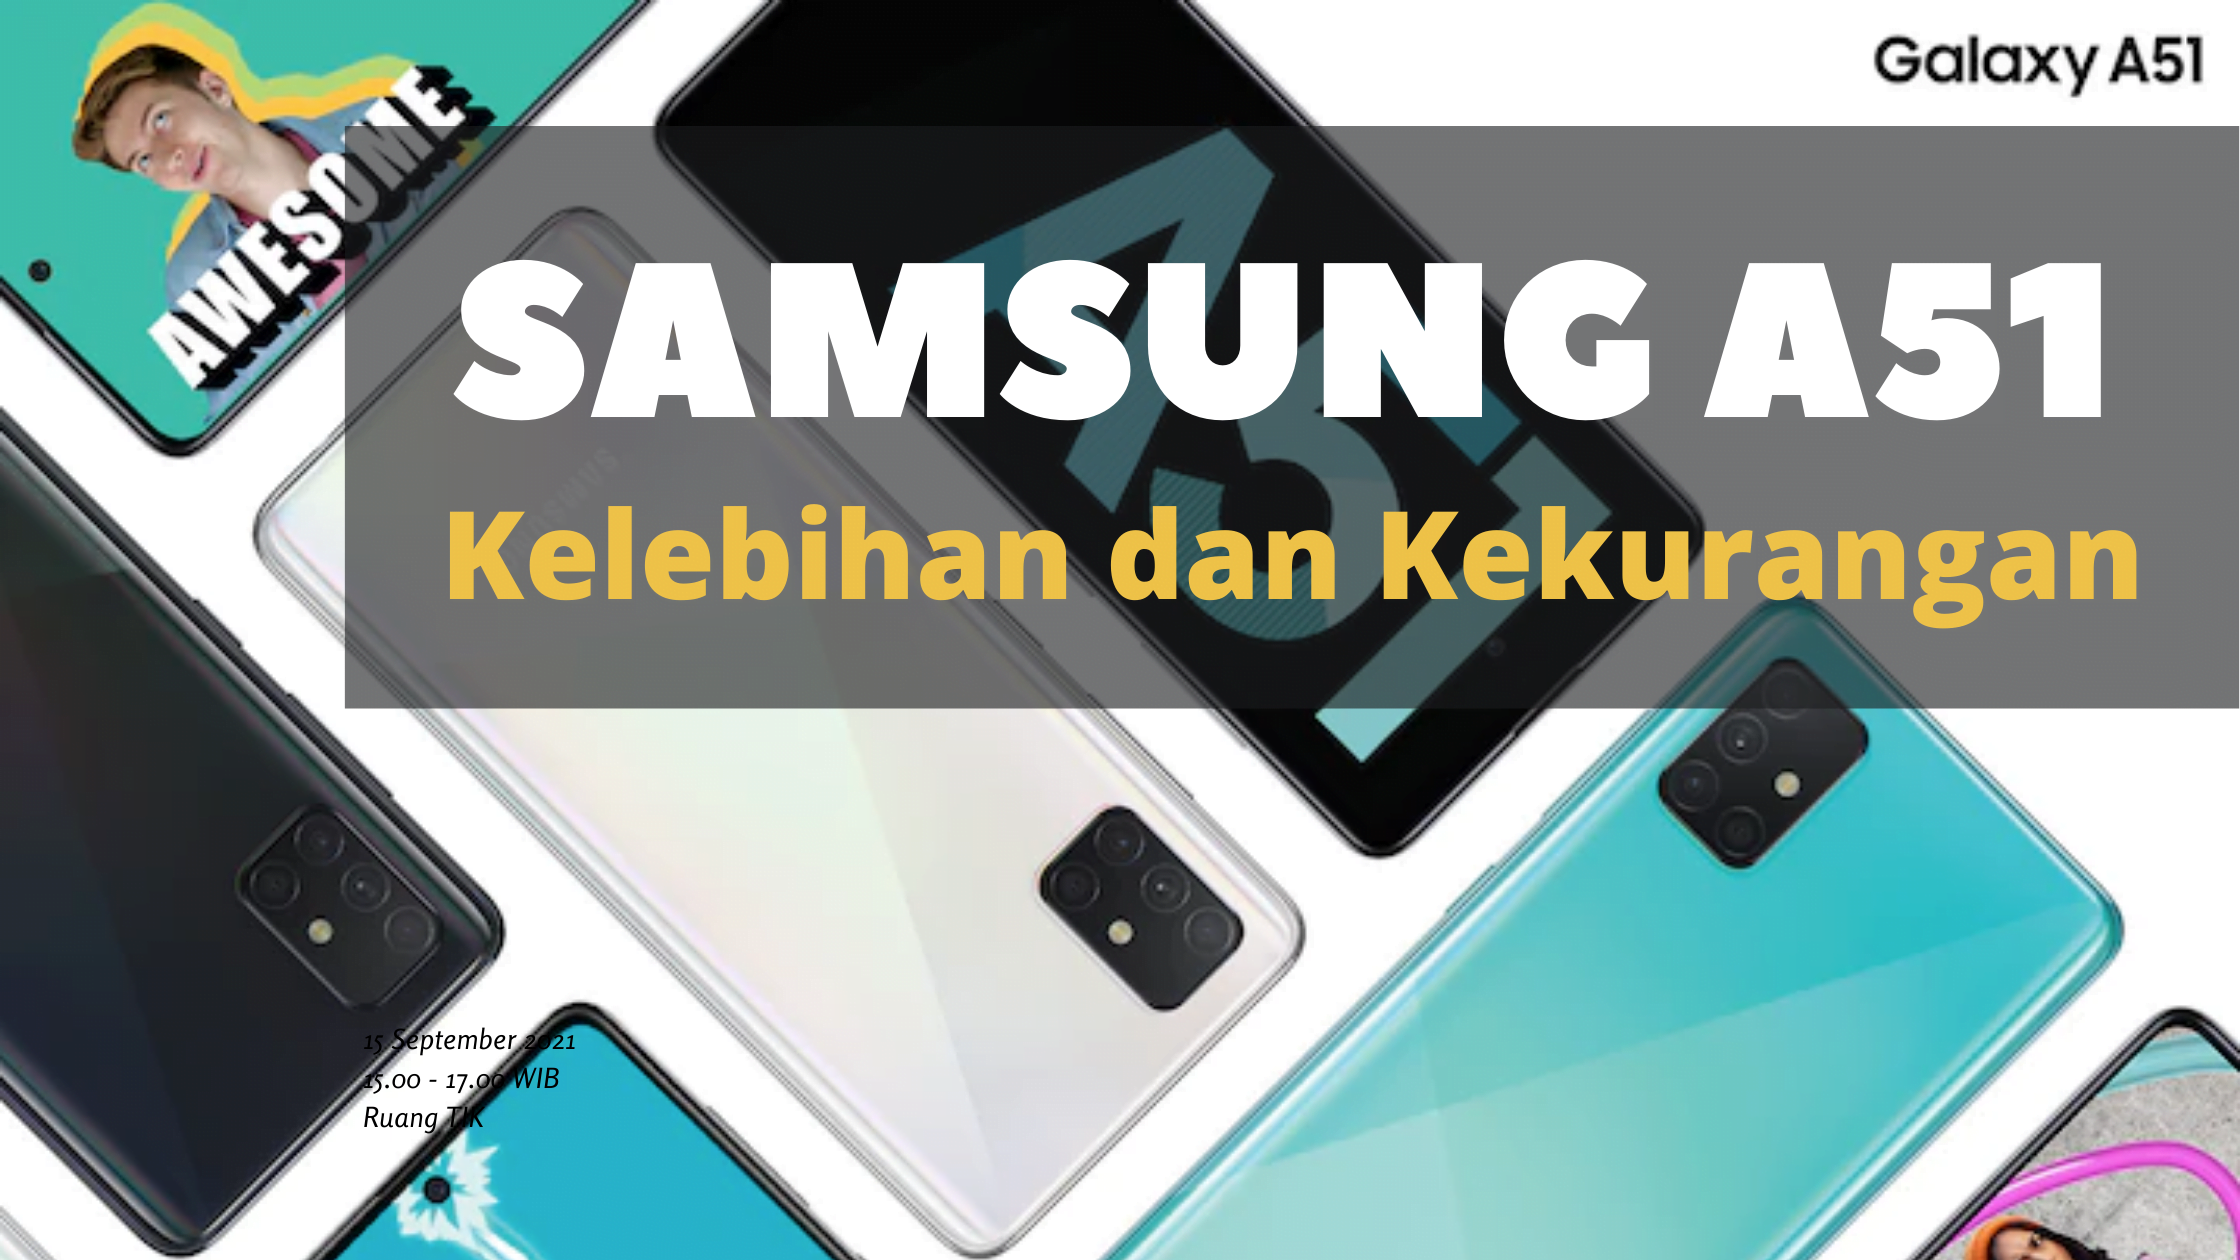 Kelebihan dan Kekurangan Samsung A51